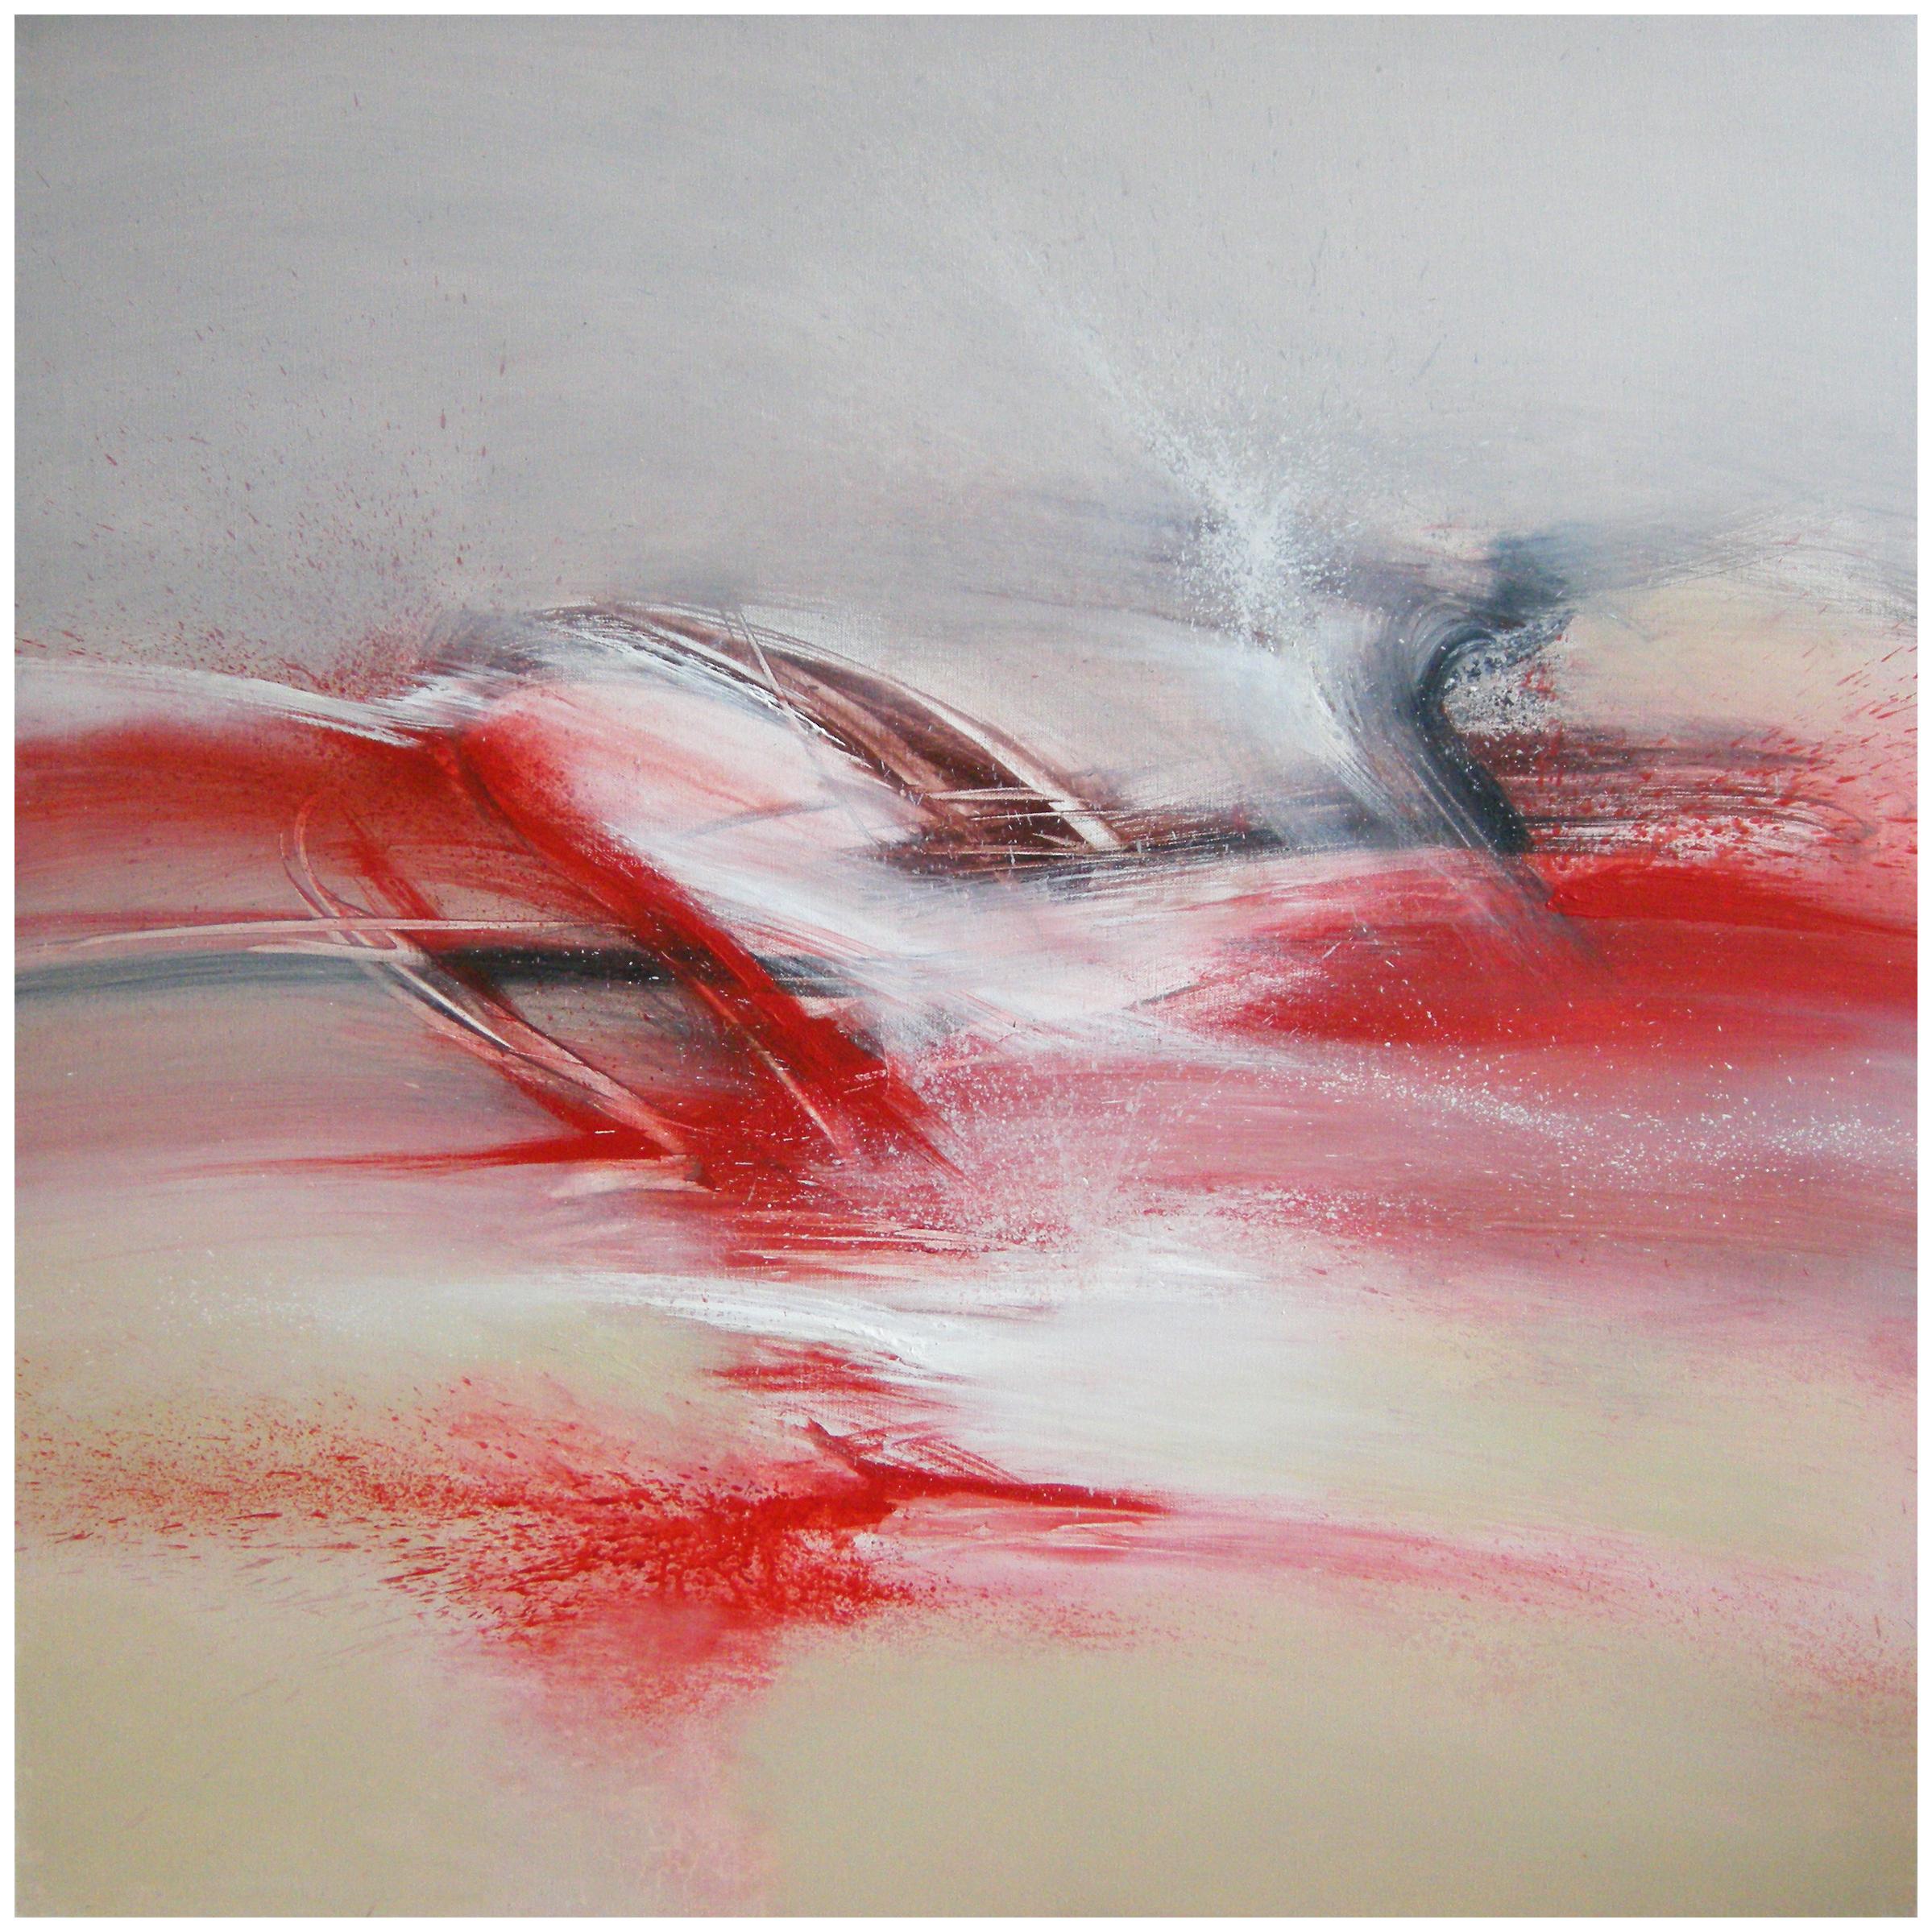 Philippe Saucourt Abstract Painting – Abstraktes Gemälde "" von Schnee und Feuer" in Rot, Beige, Schwarz und Weiß